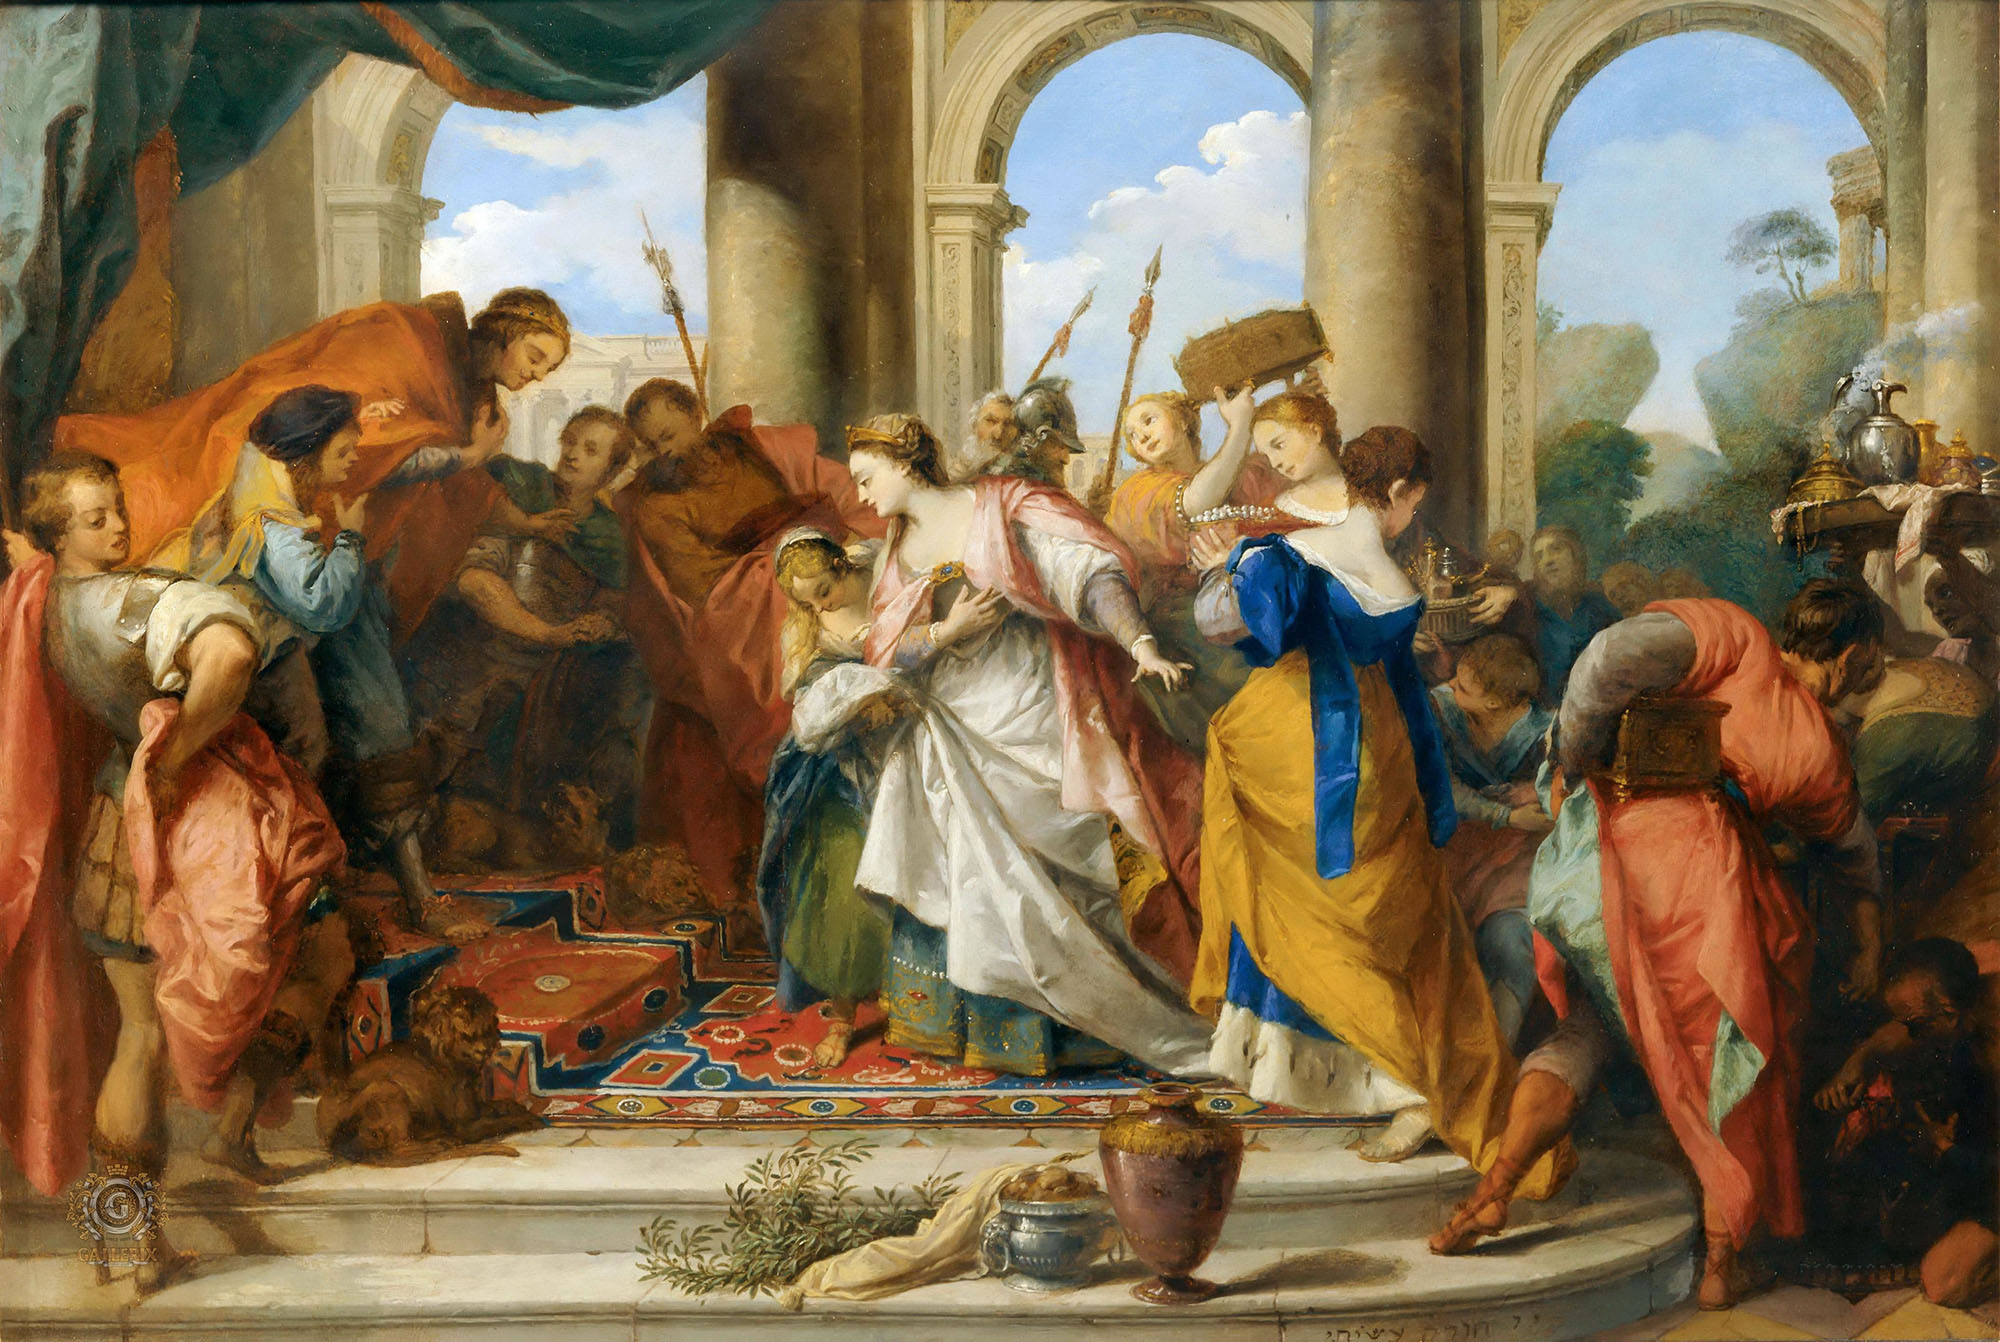 Никола Влегель. "Соломон и царица Савская". 1728. Лувр, Париж.